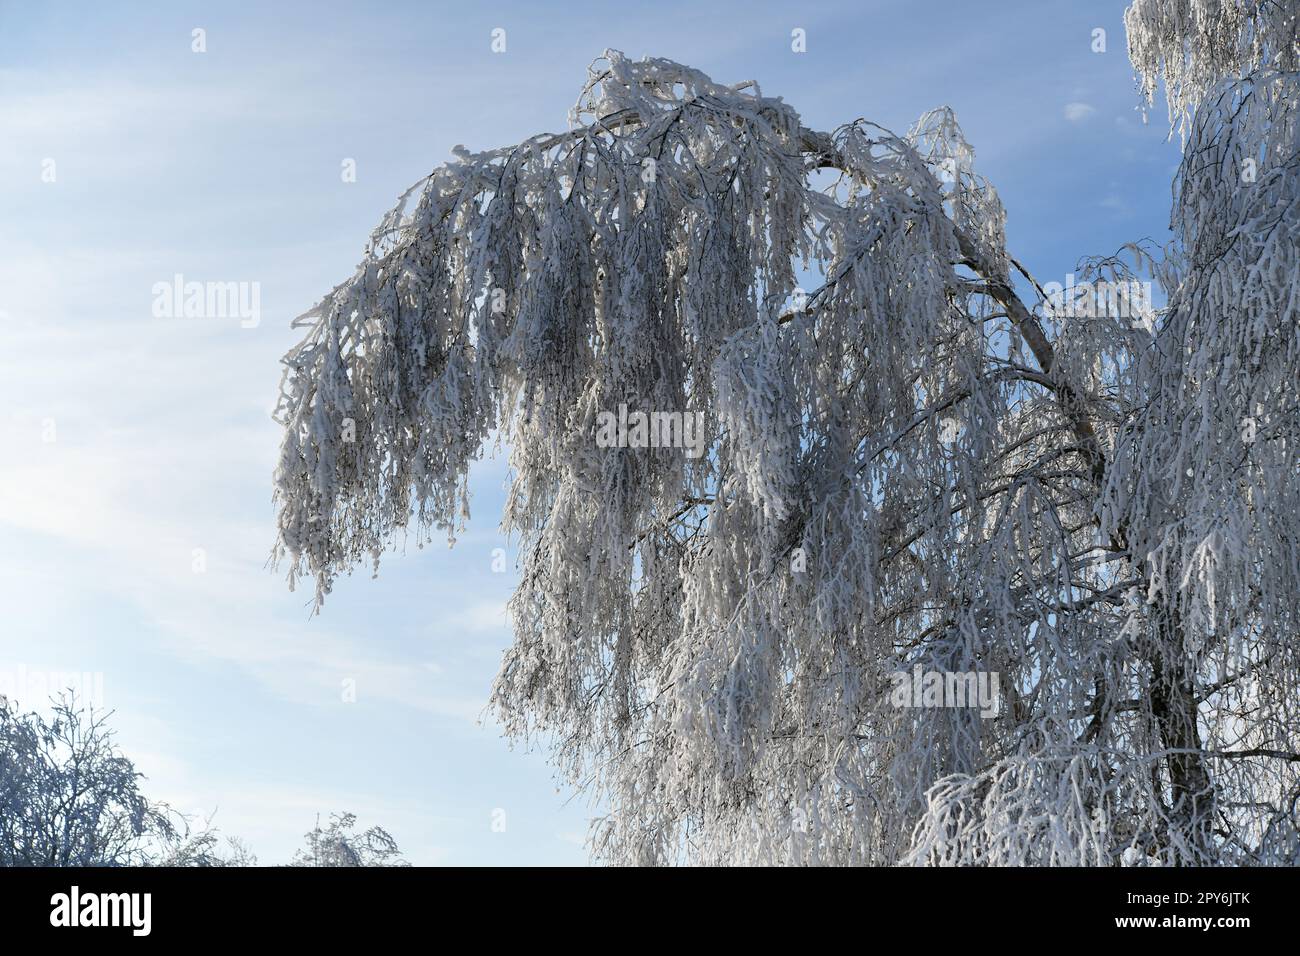 branche enneigée blanche par temps de gel Banque D'Images